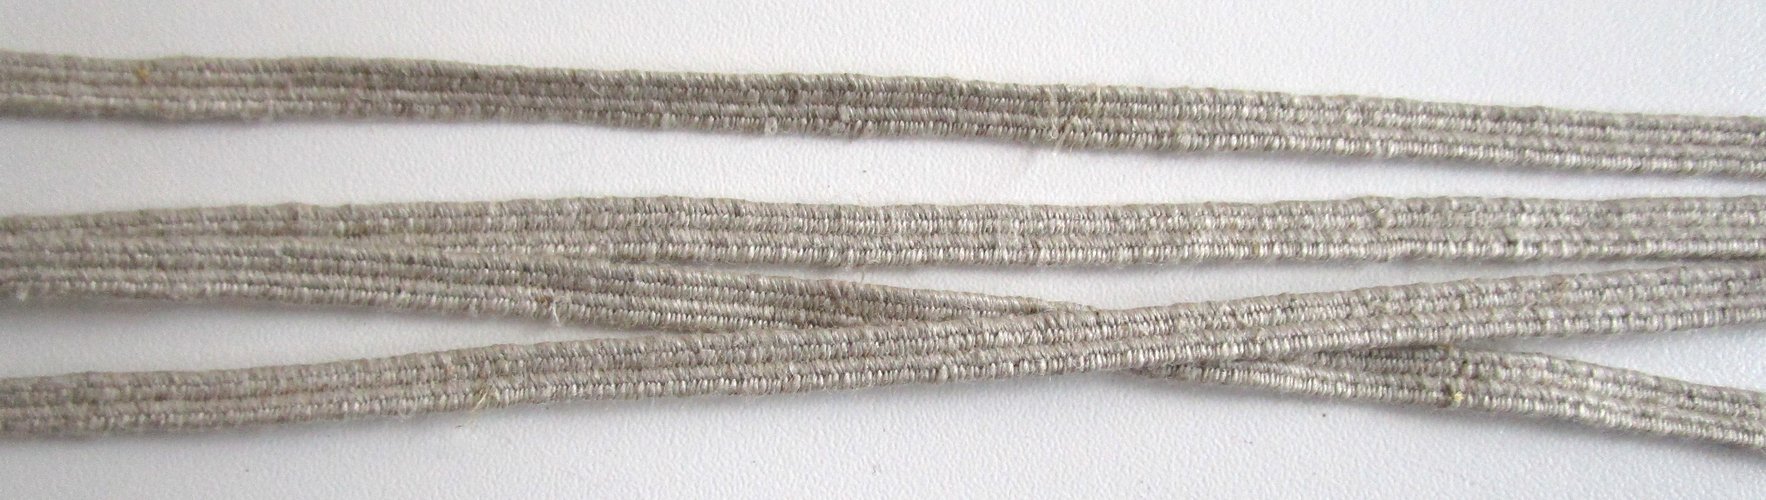 Fabricant de cordon élastique en lin